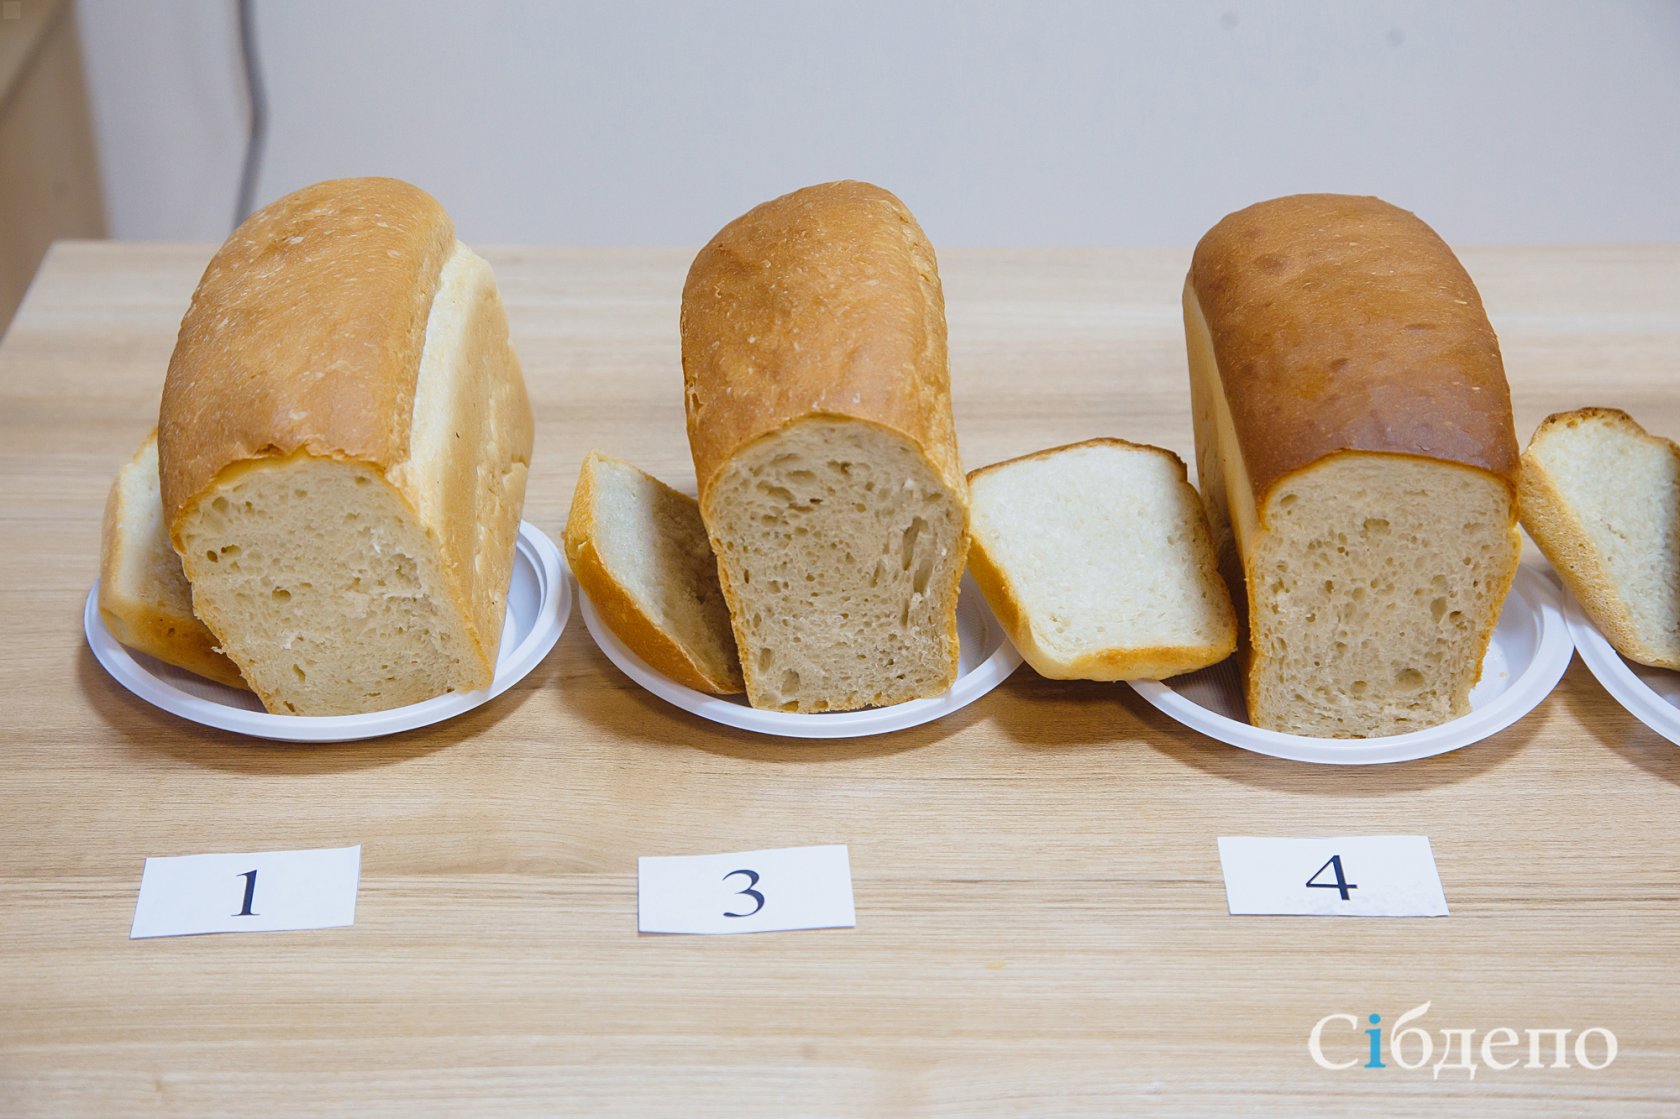 Оценка качества хлеба. Экспертиза качества хлеба. Экспертиза хлебобулочных изделий. Хлеб и хлебобулочные изделия в лаборатории.